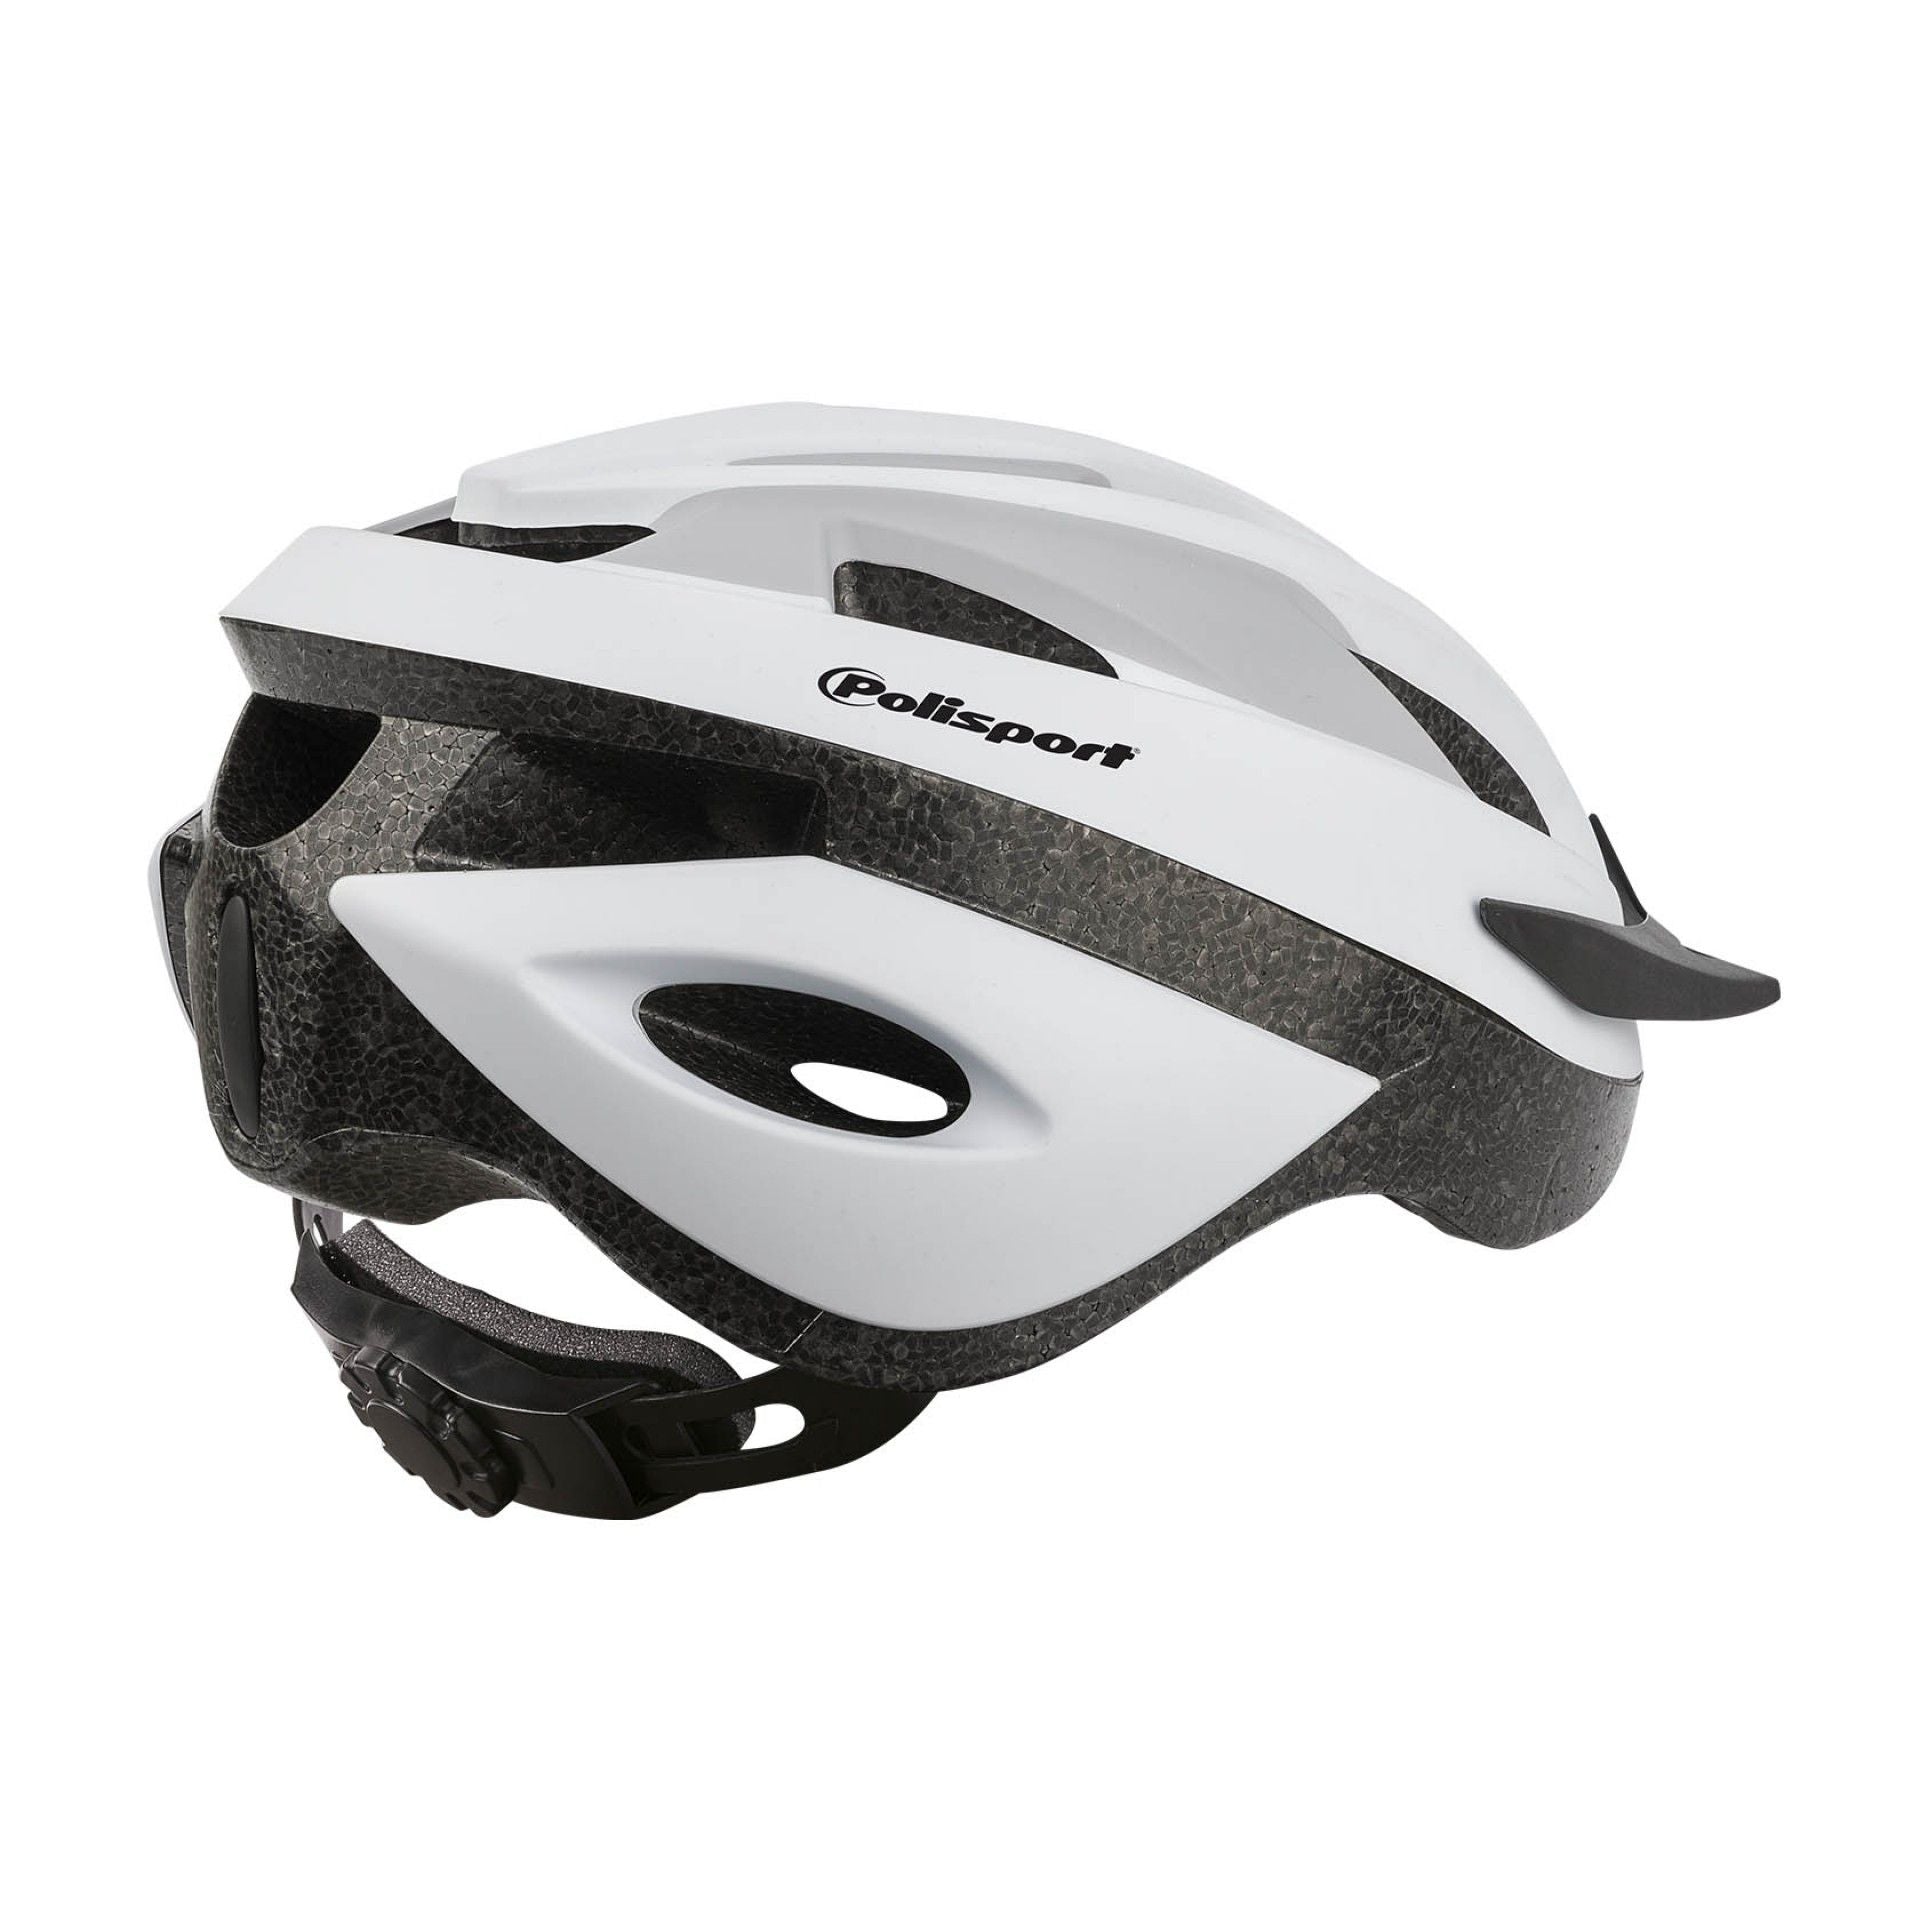 Polisport - Sport Ride Helmet